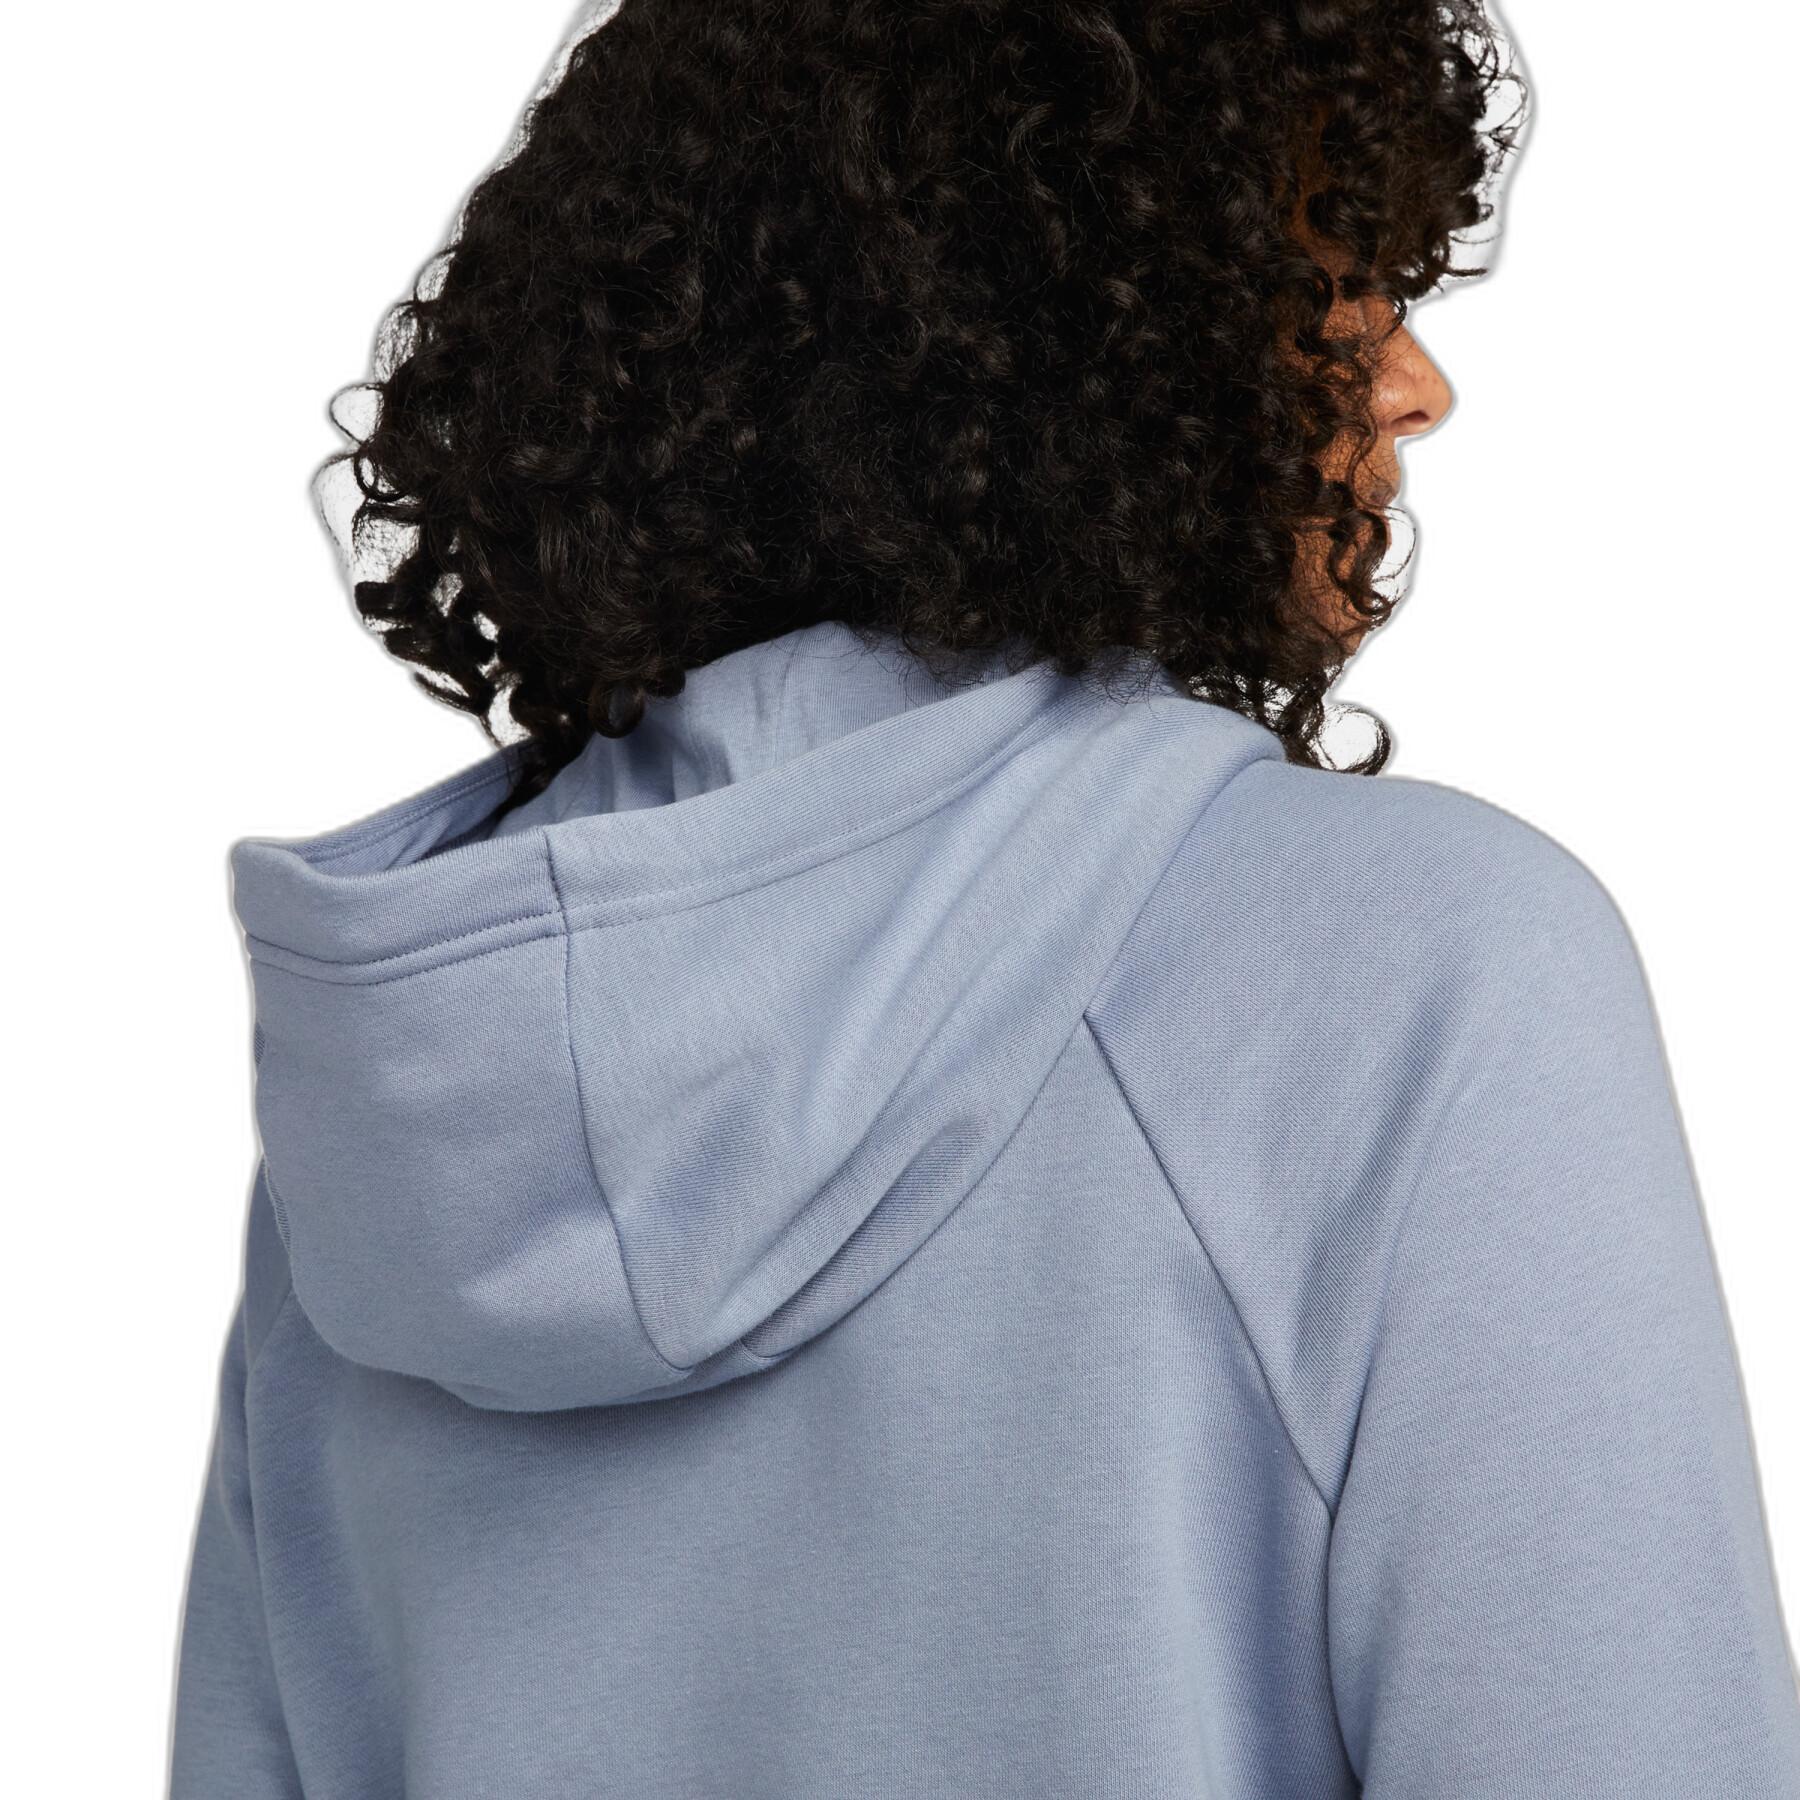 Women's hooded sweatshirt Nike Sportswear Essential PO HBR